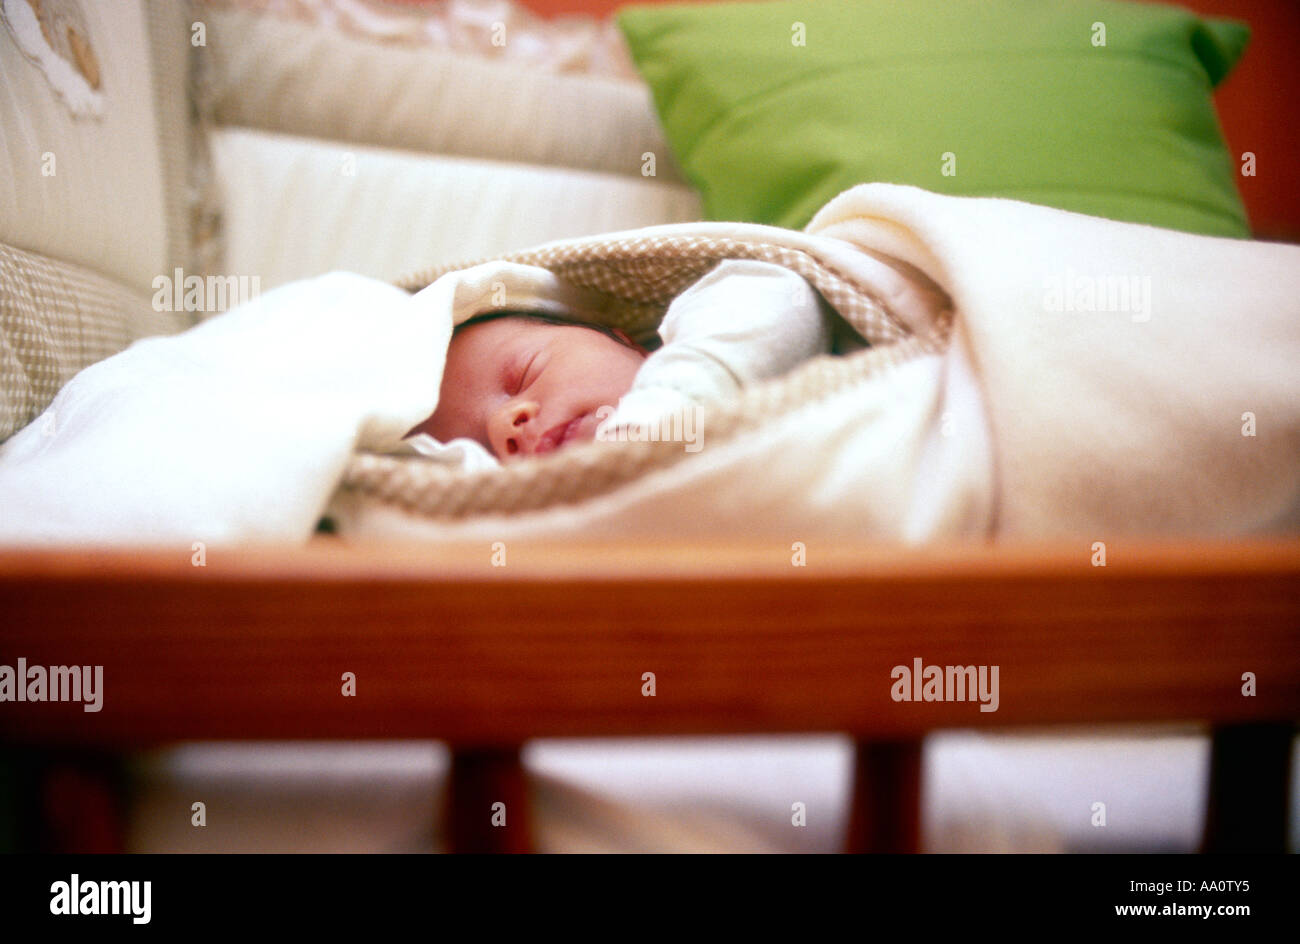 La Pologne, nouveau-né (0-3 mois) dormir dans une couverture, close-up Banque D'Images